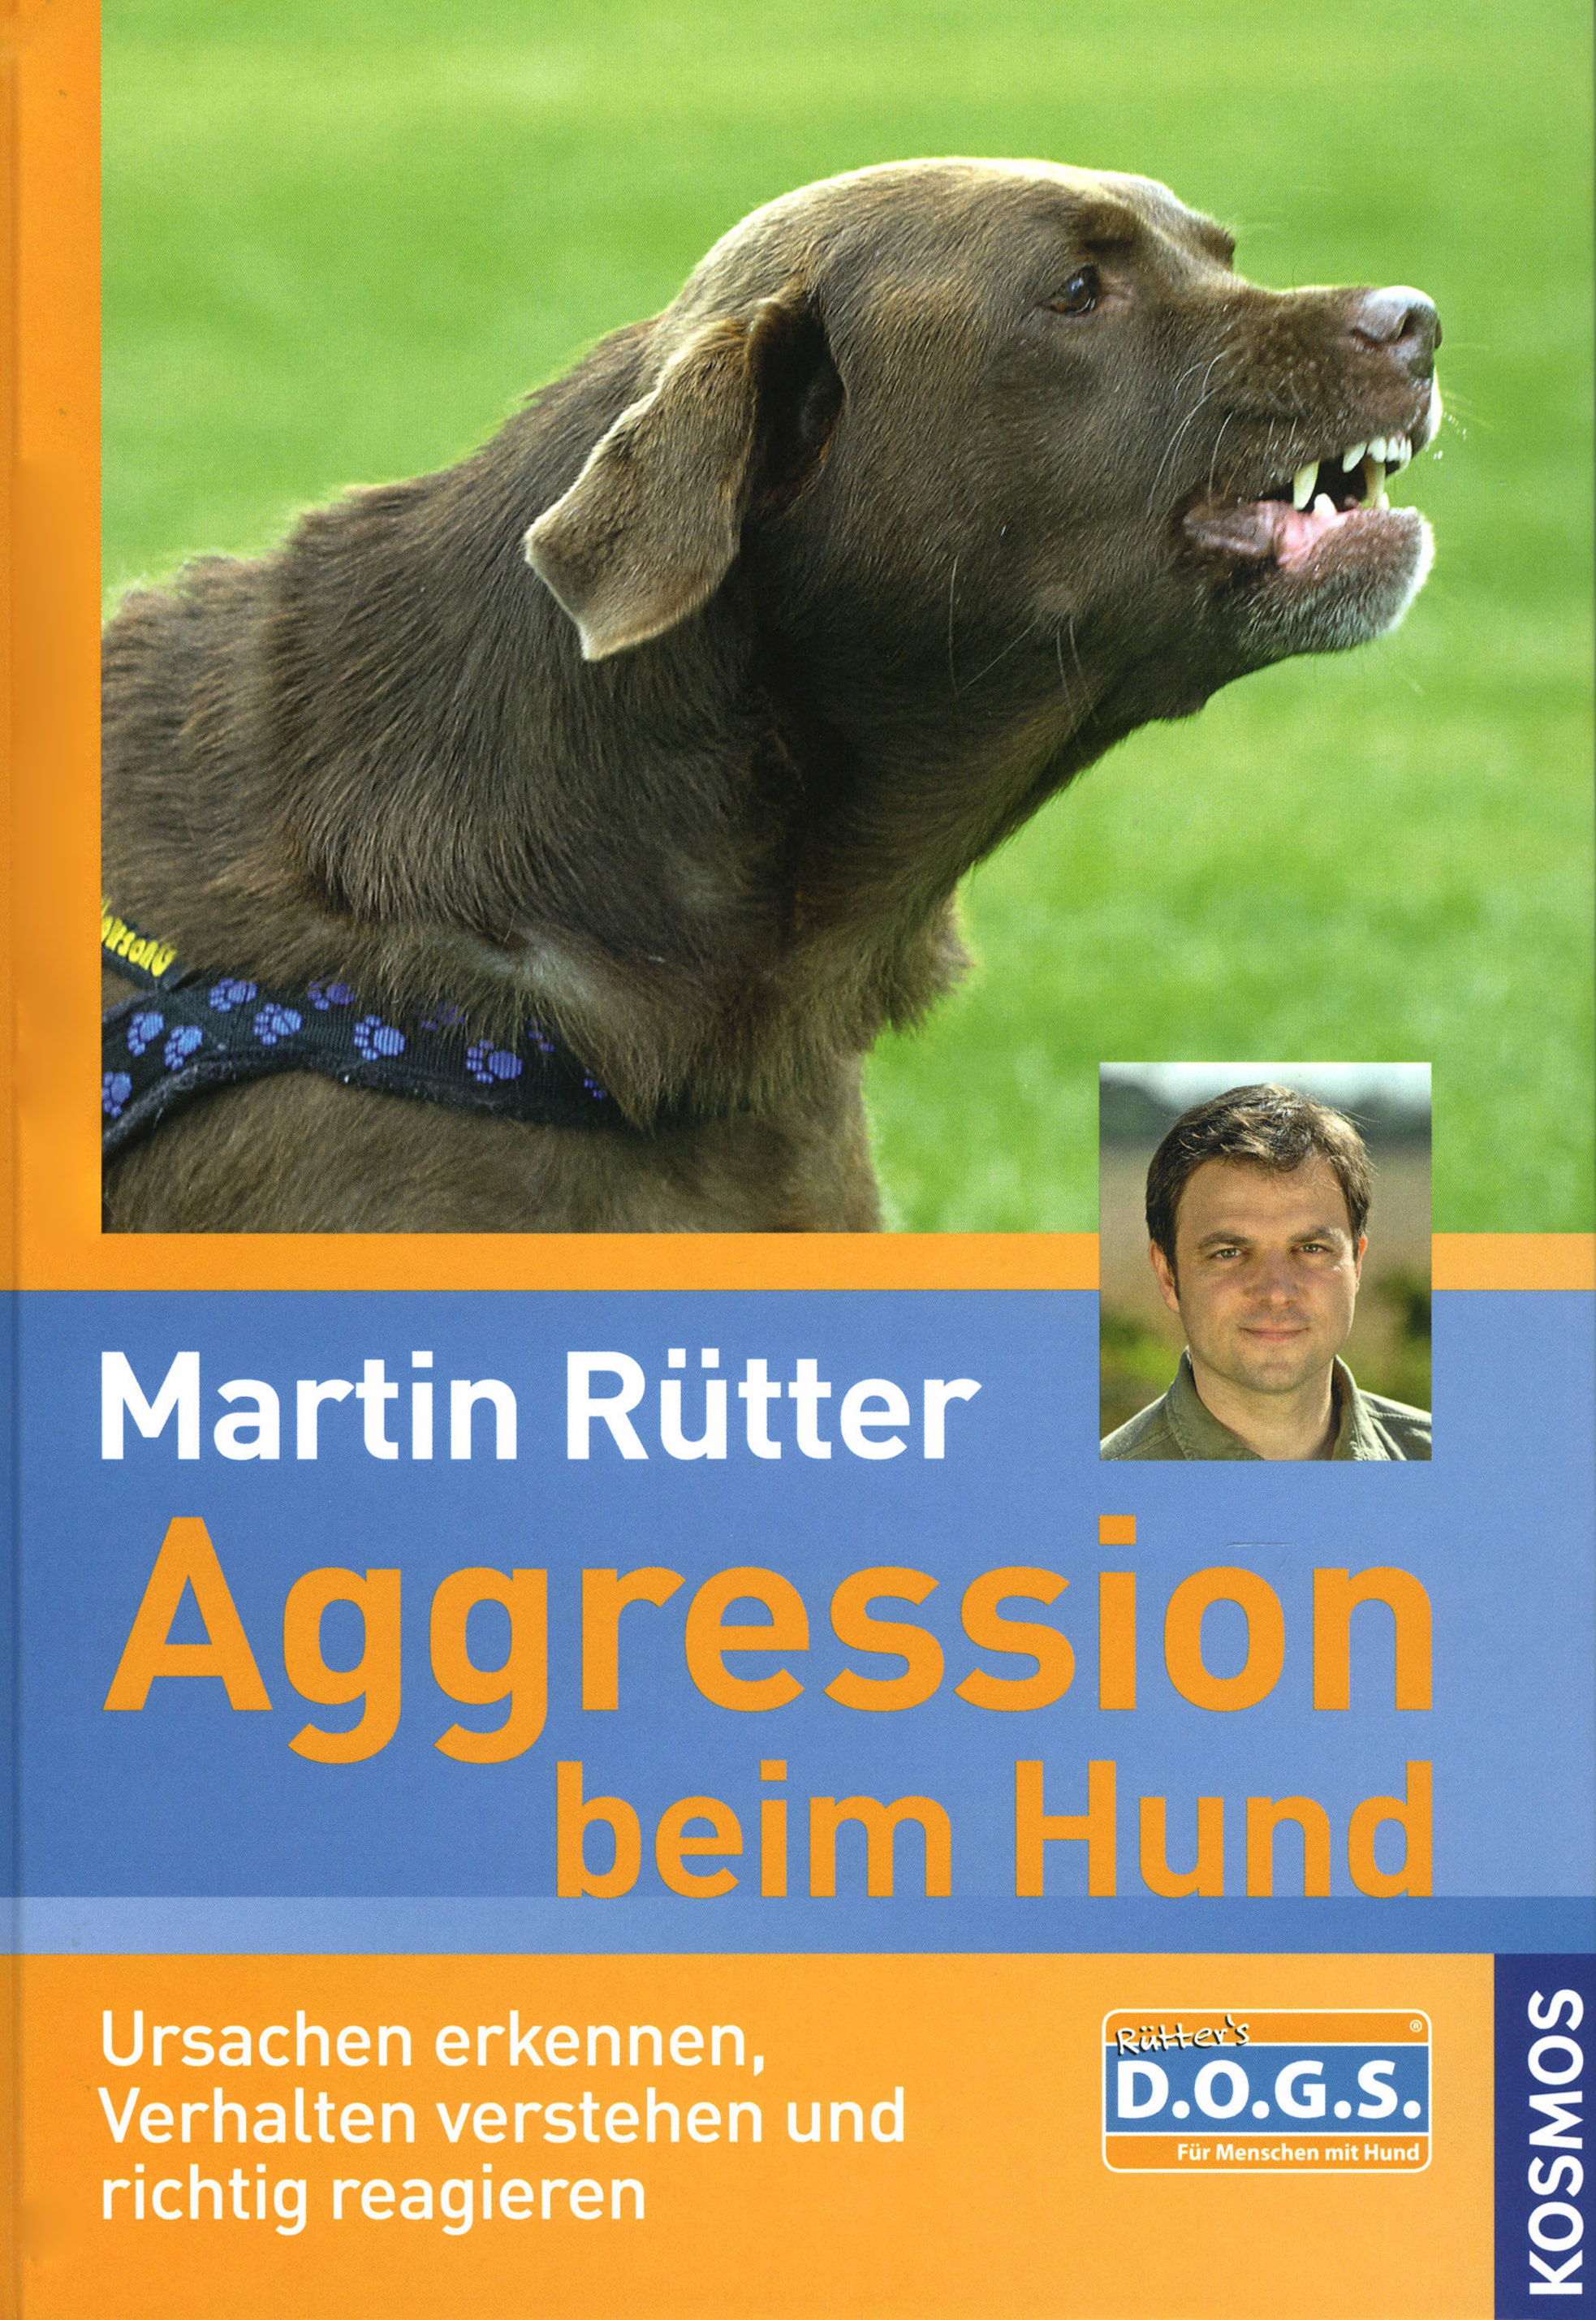 Aggression beim Hund Buch von Martin Rütter versandkostenfrei bestellen